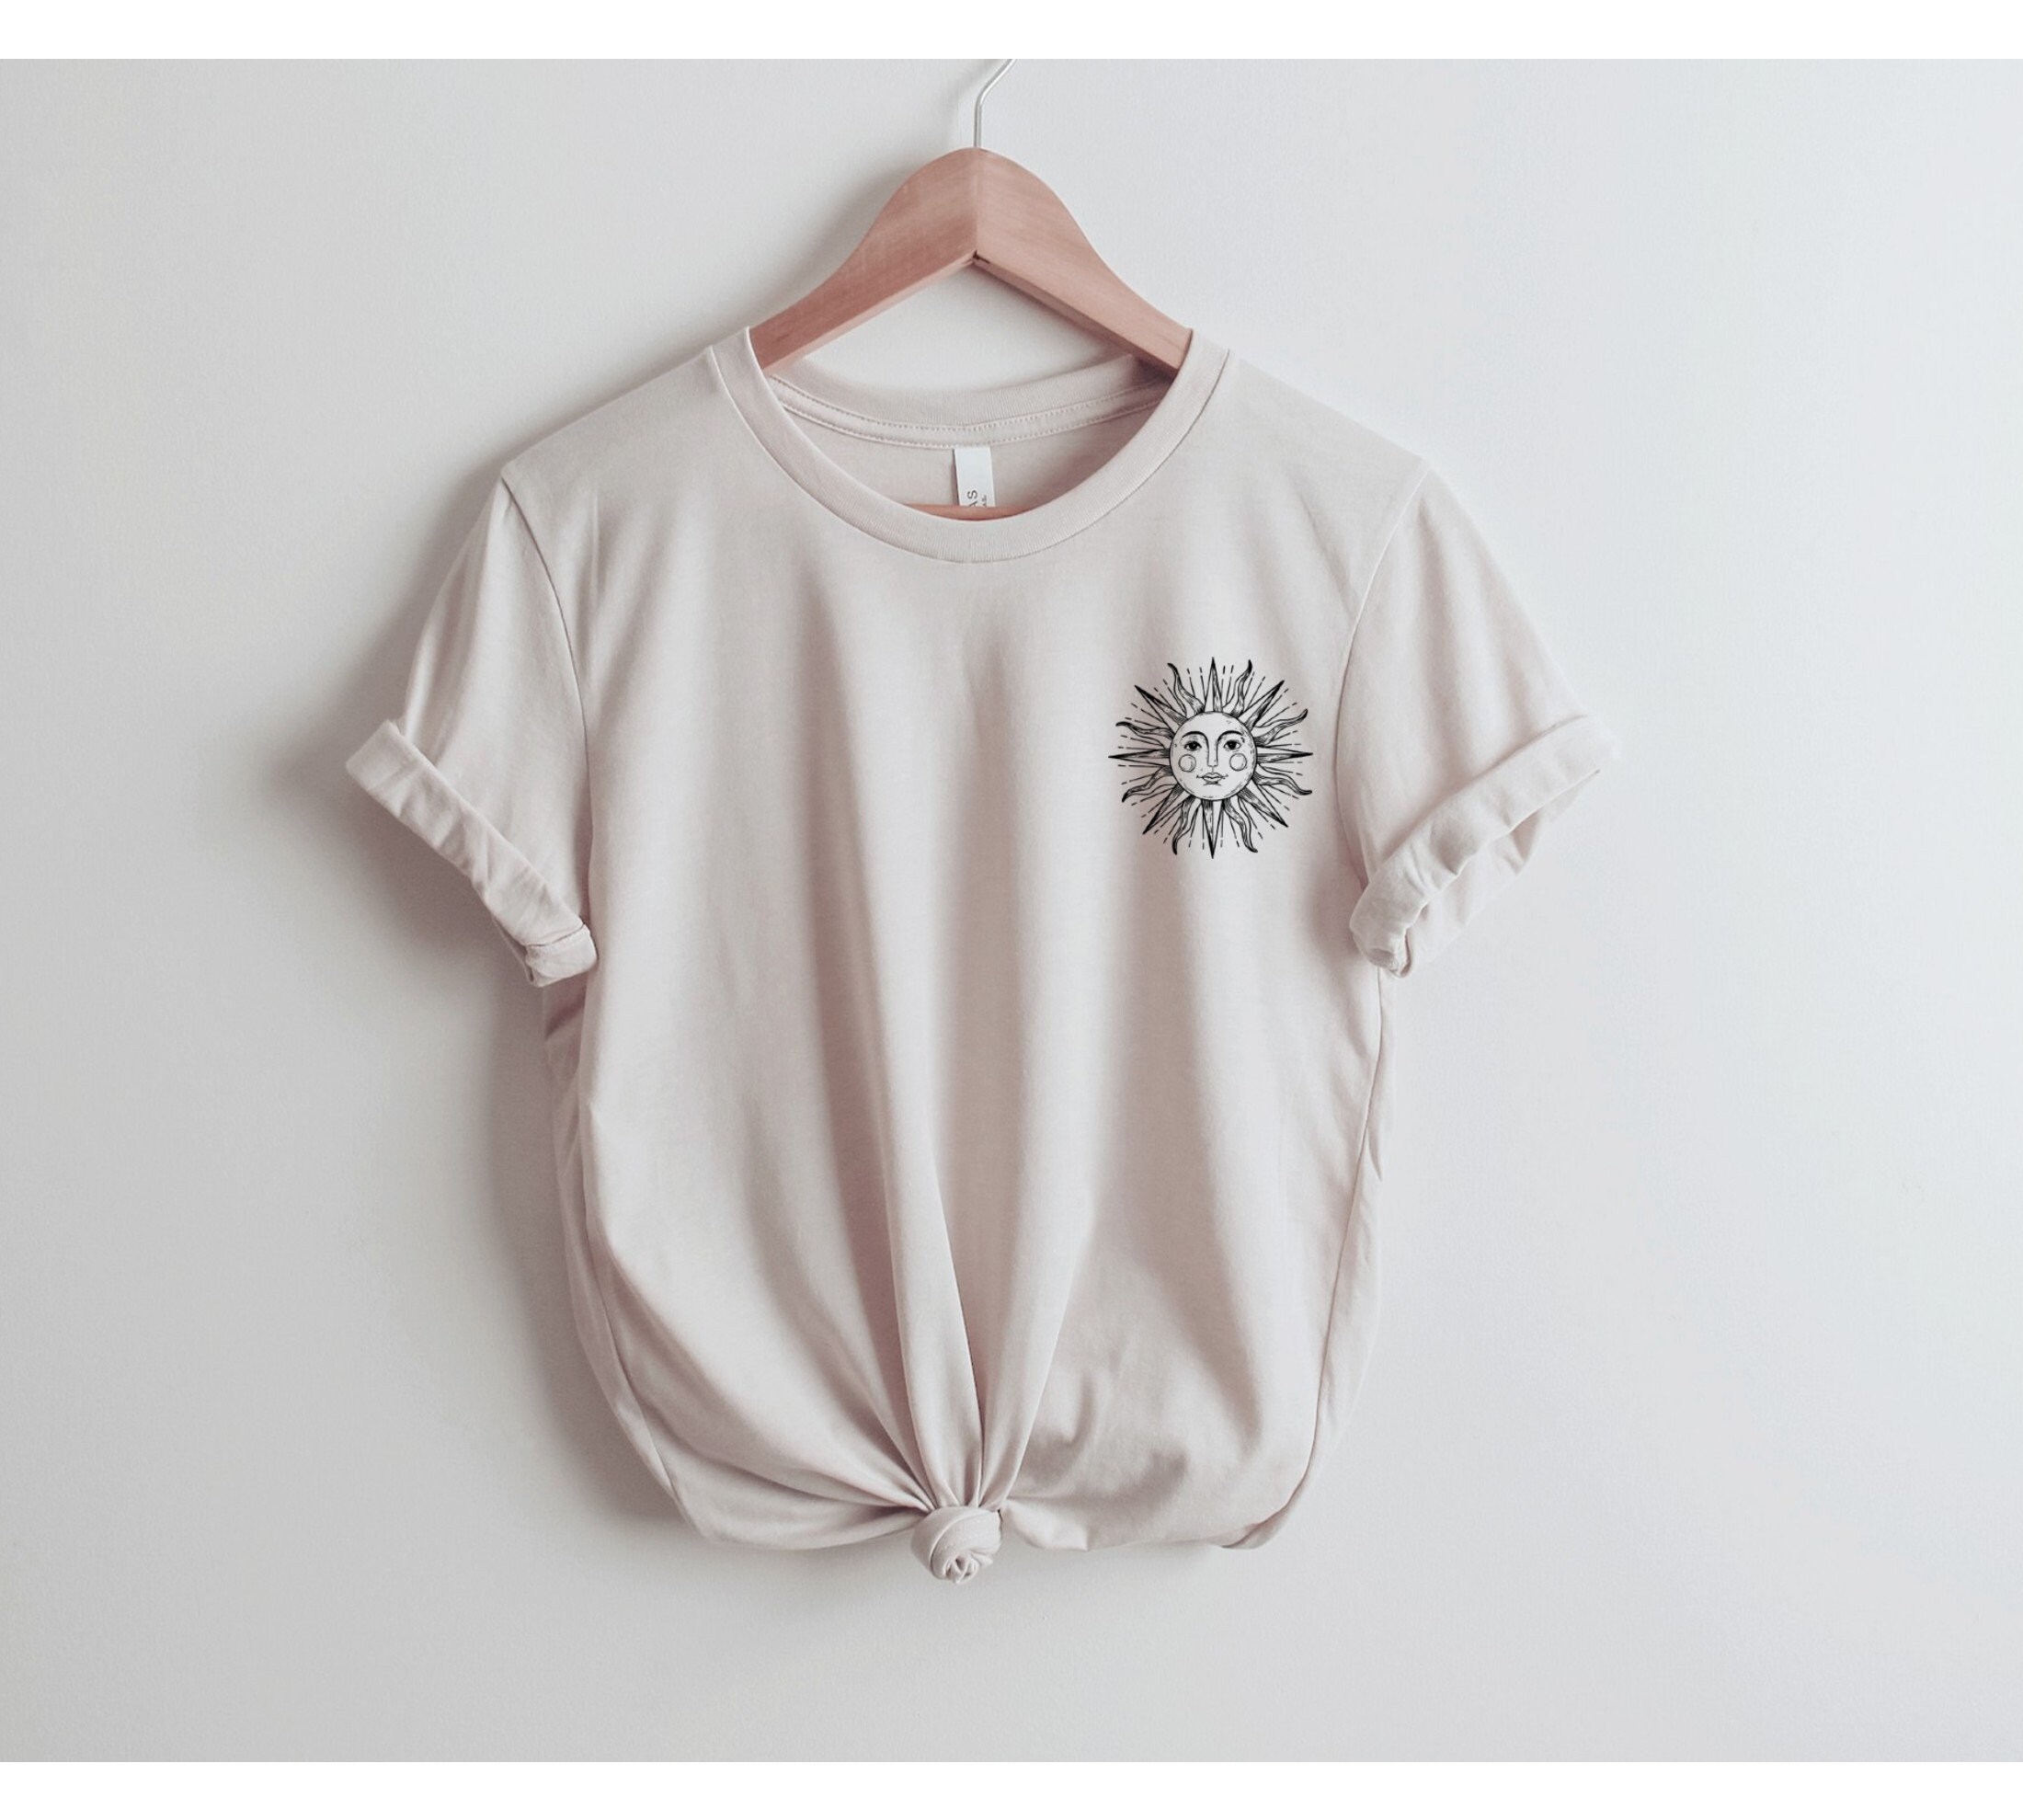 Logo Sun Shirt Celestial Tee Sun Shirt One with the Sun | Etsy